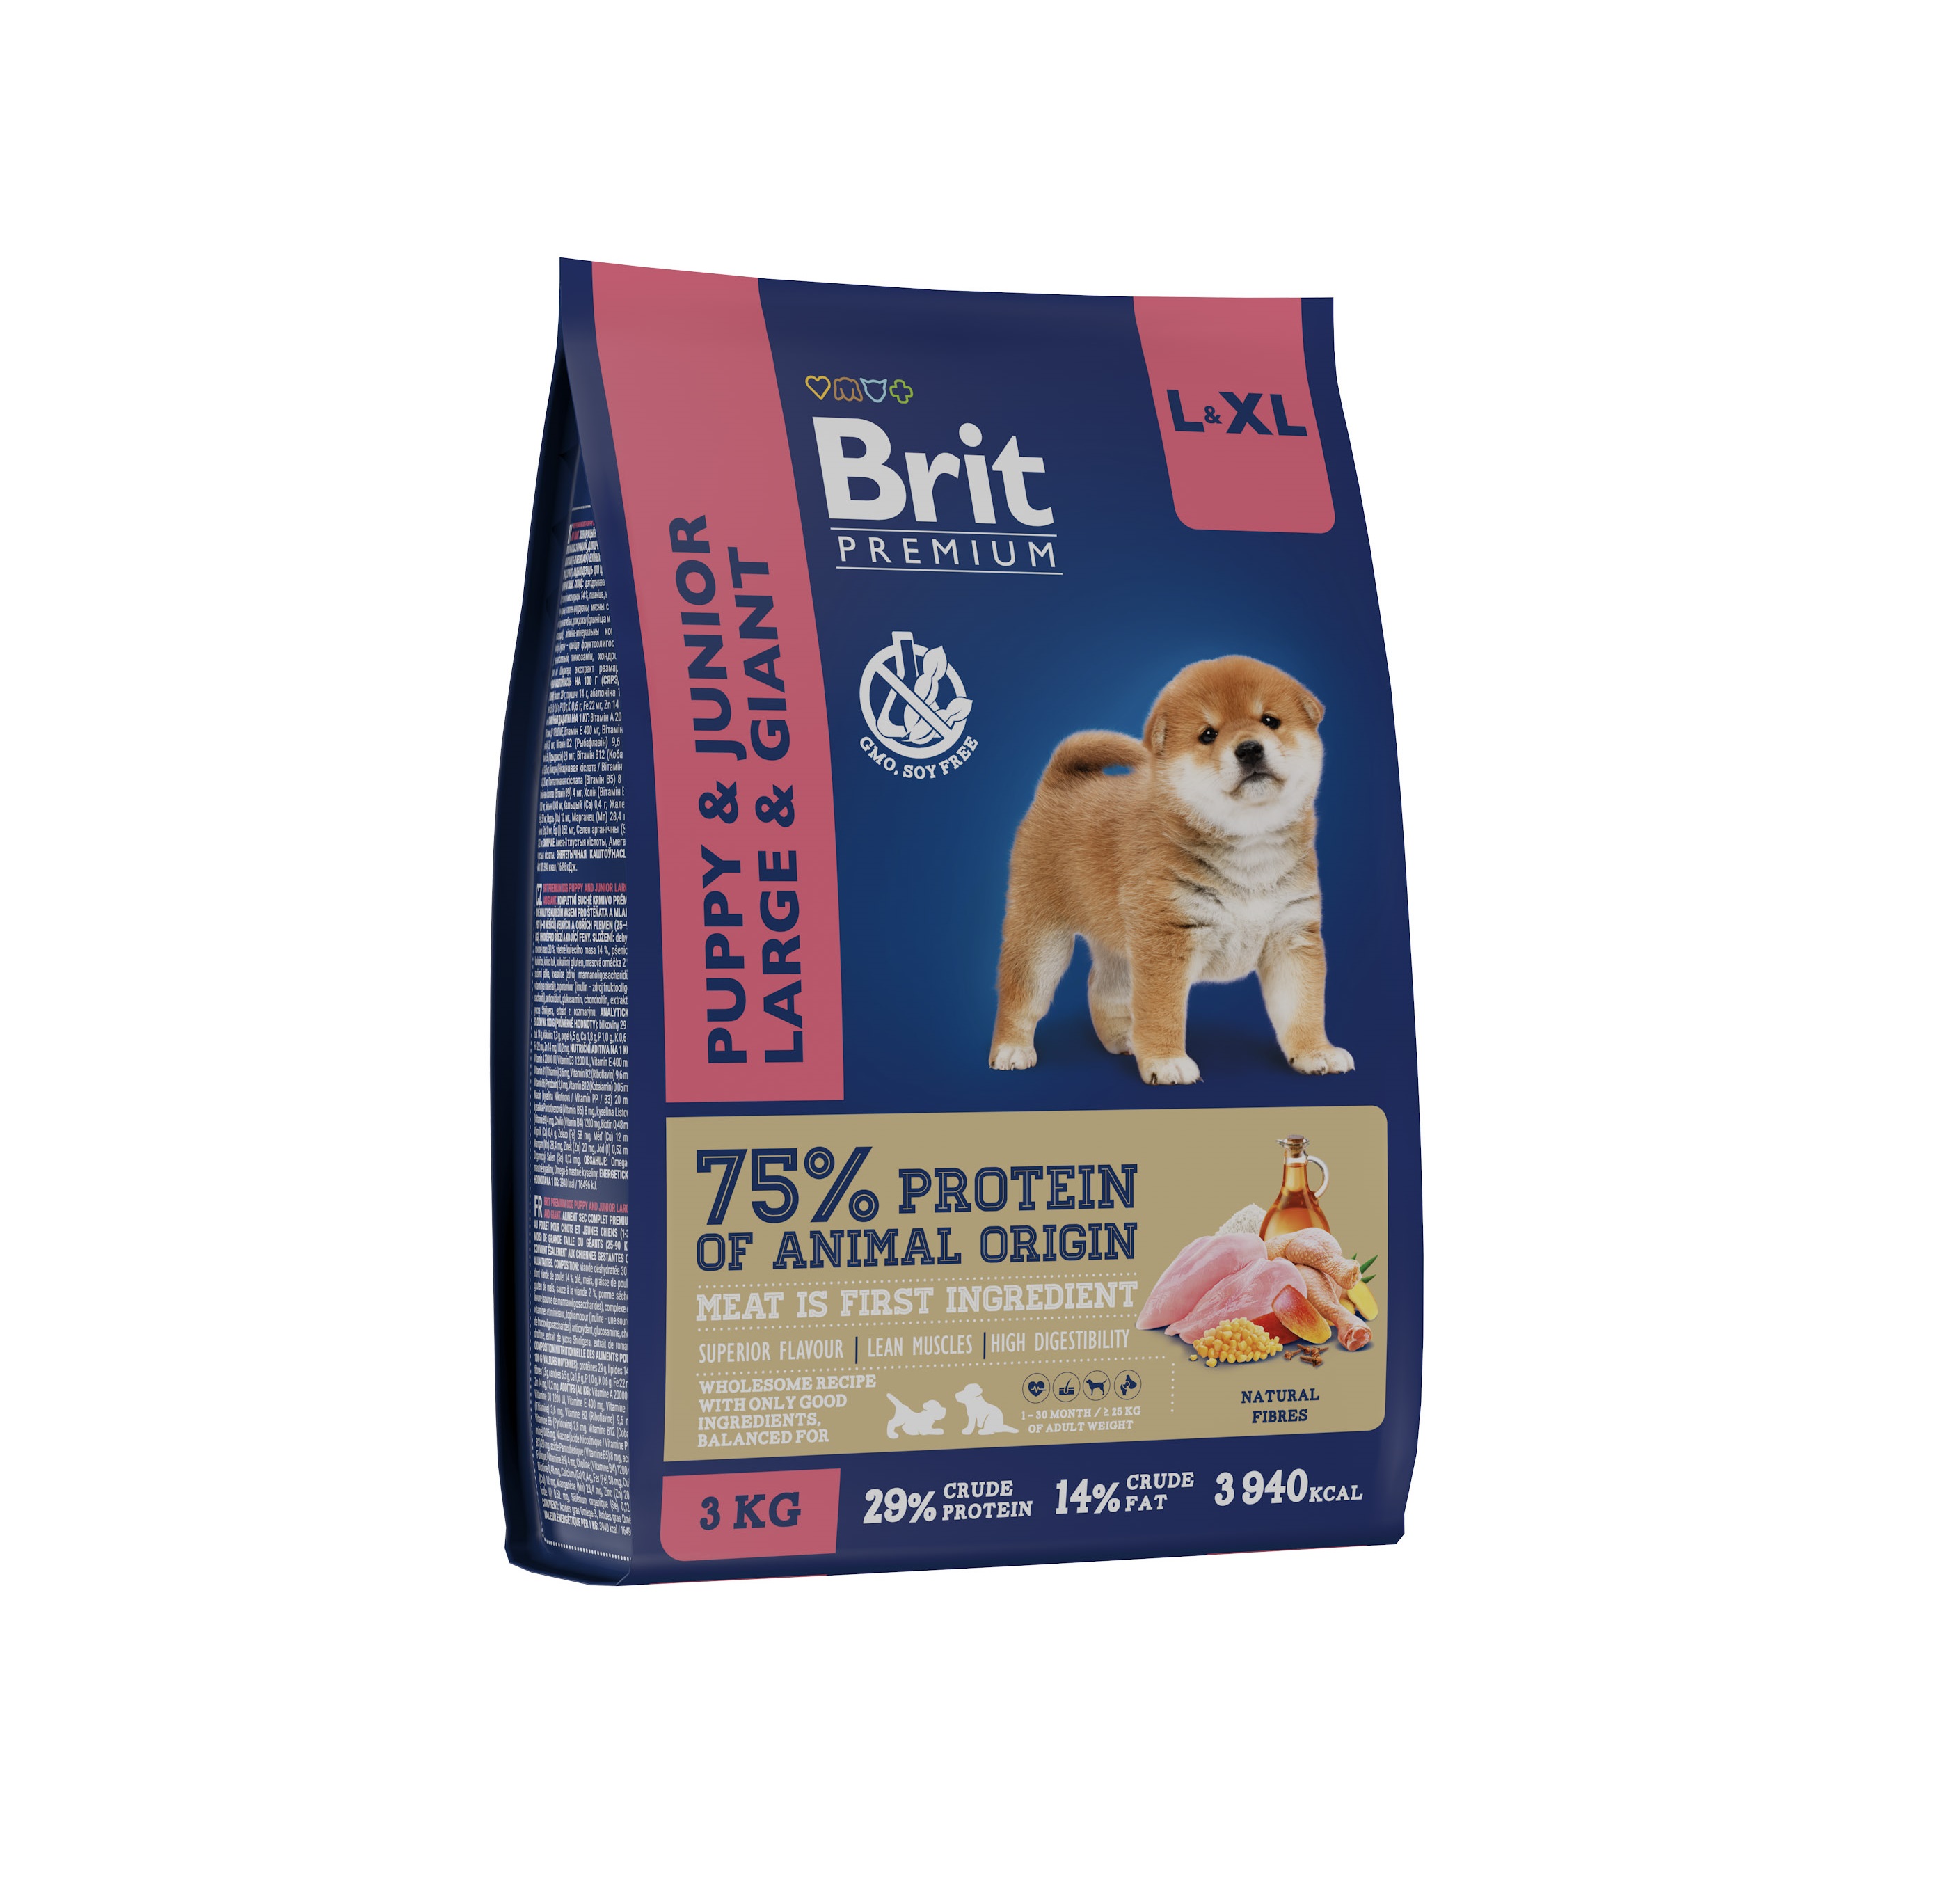 Брит 3кг для щенков Крупных и Гигантских пород Курица (Brit Premium by Nature)